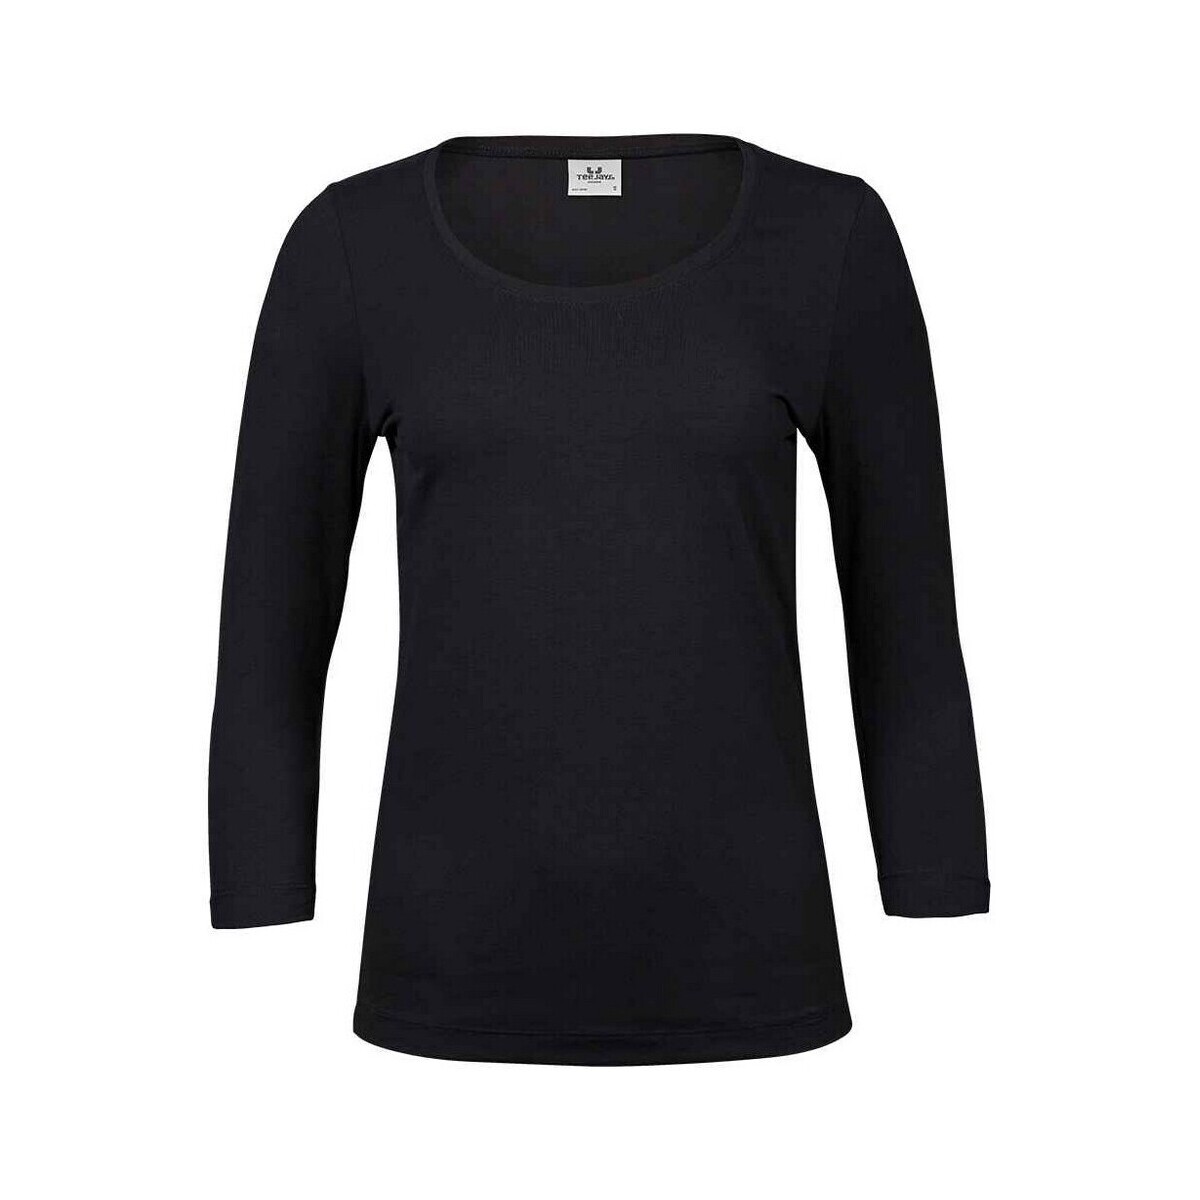 Vêtements Femme T-shirts manches longues Tee Jays PC5238 Noir